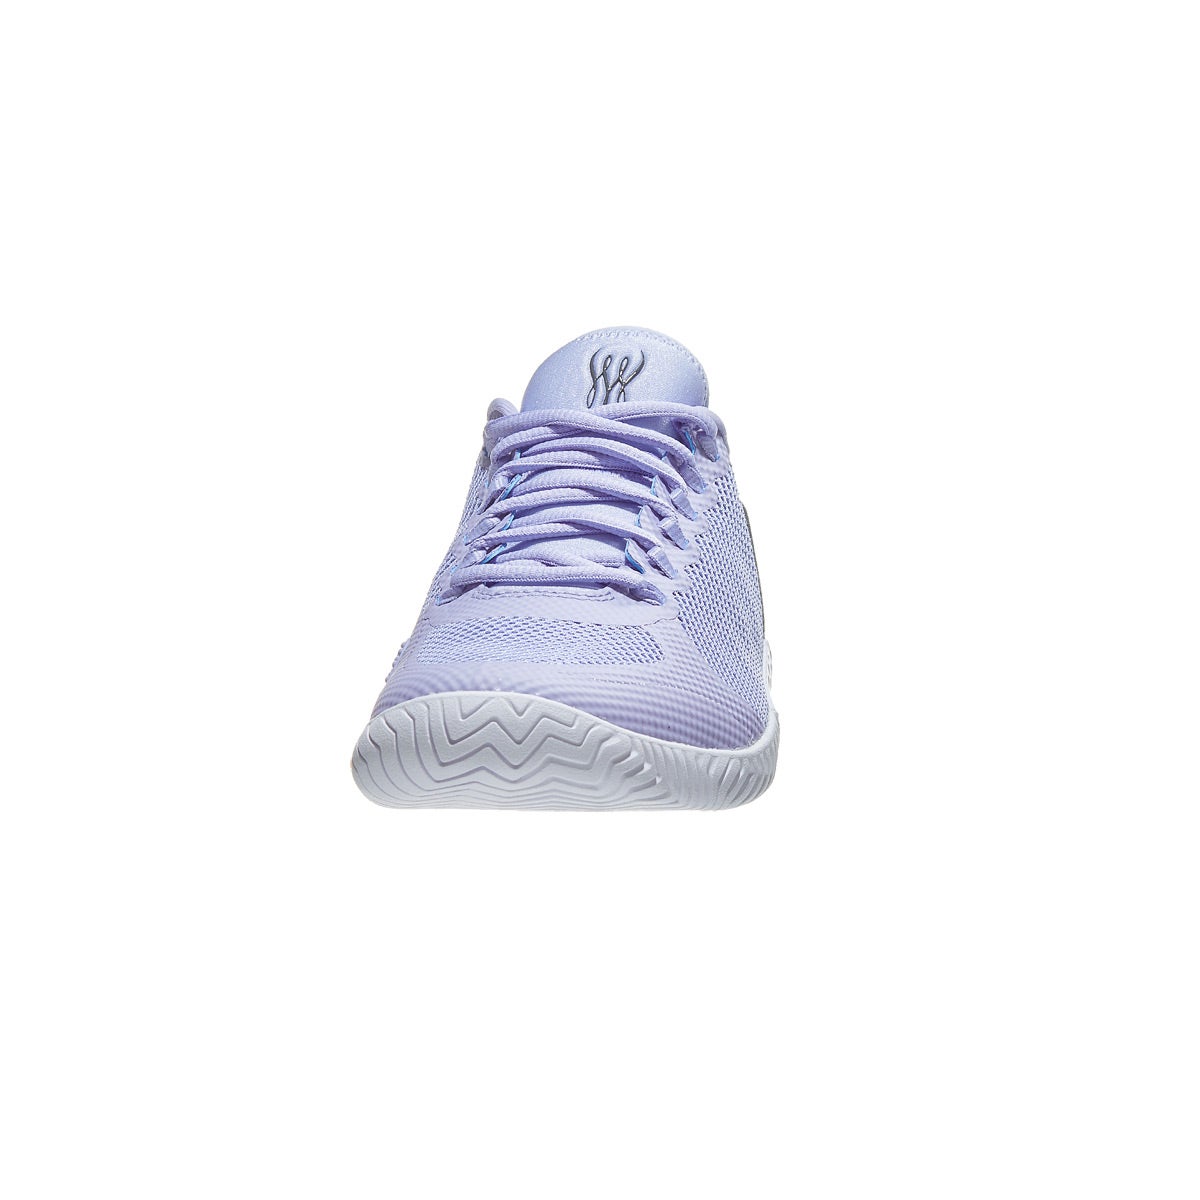 nike flare 2 hc purple women's shoe